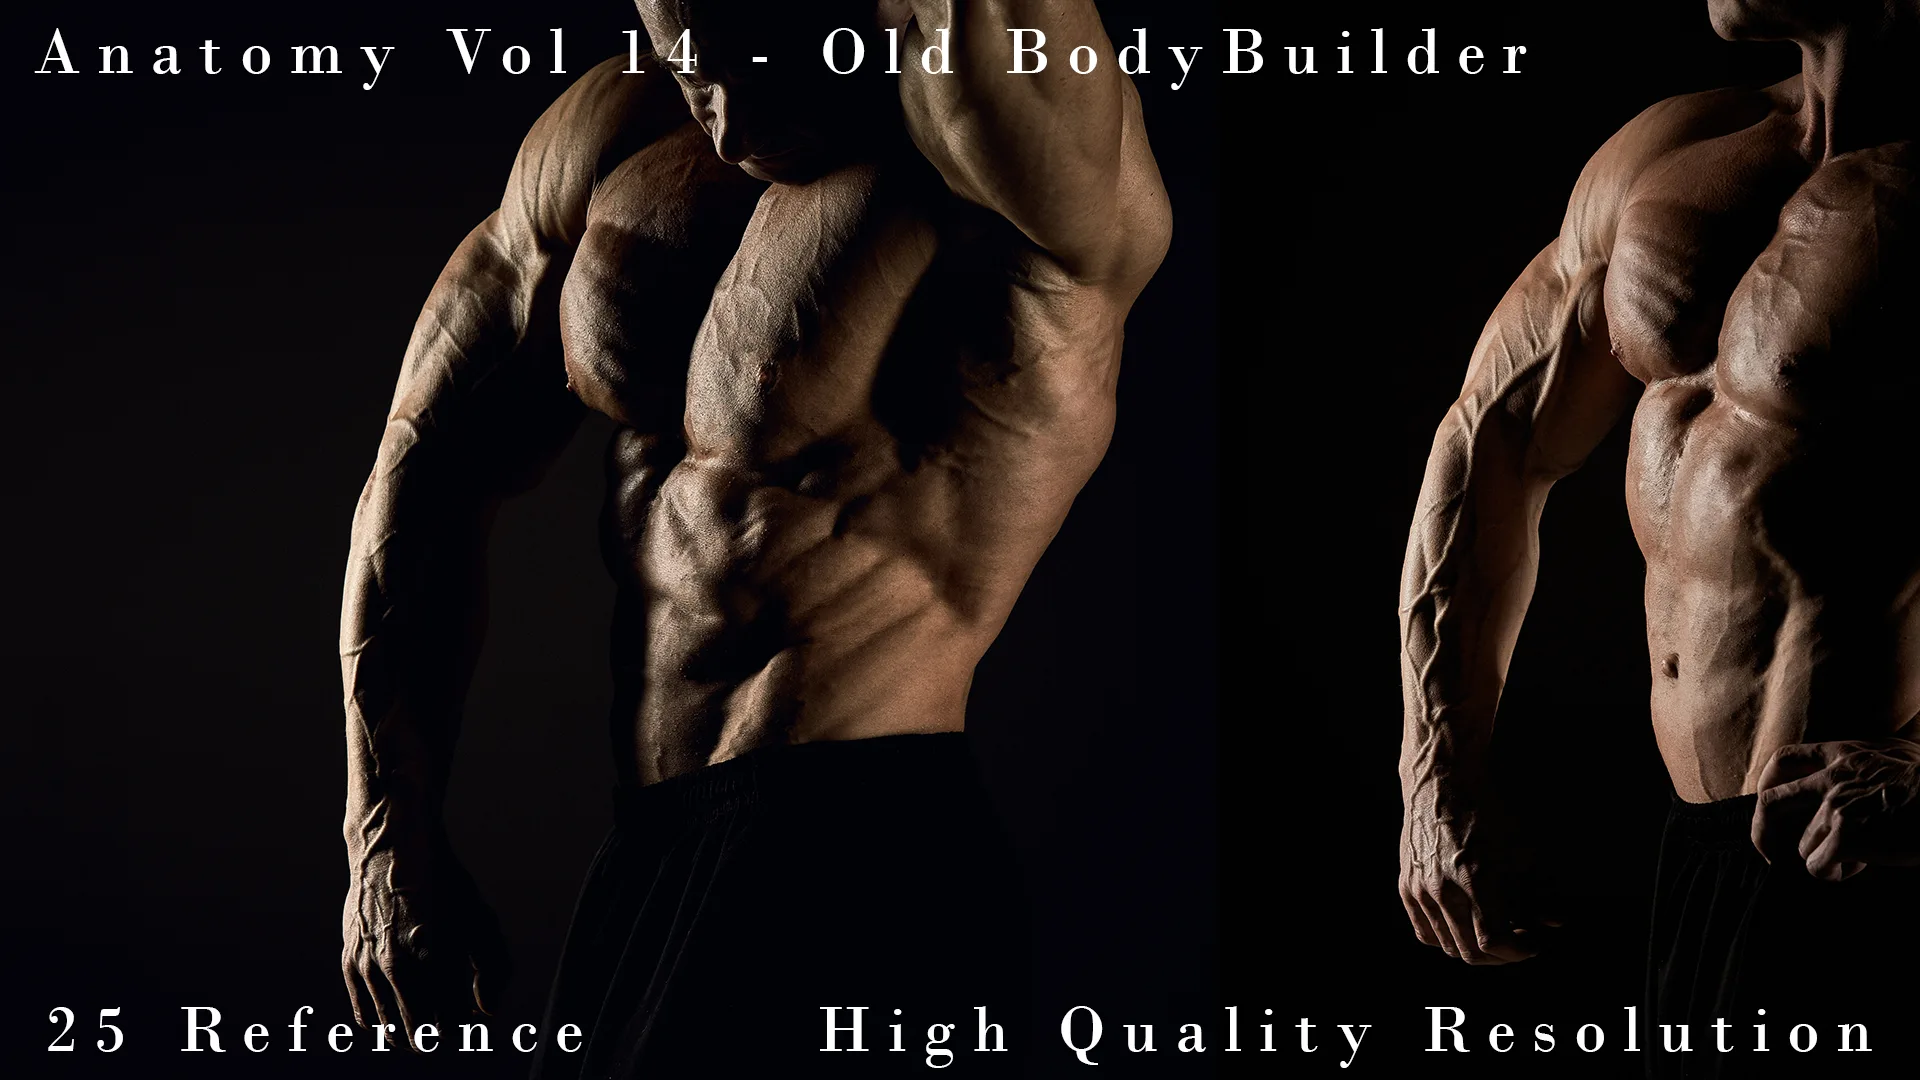 Anatomy Vol 14 - Old BodyBuilder